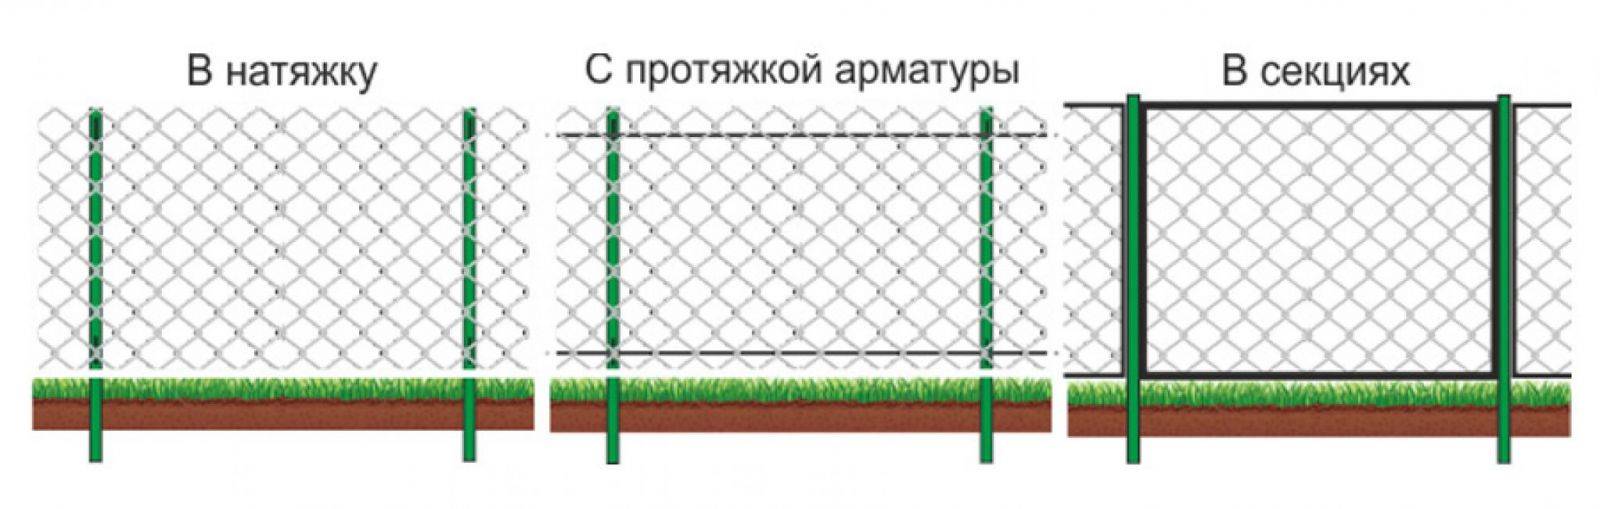 Забор из сетки рабицы